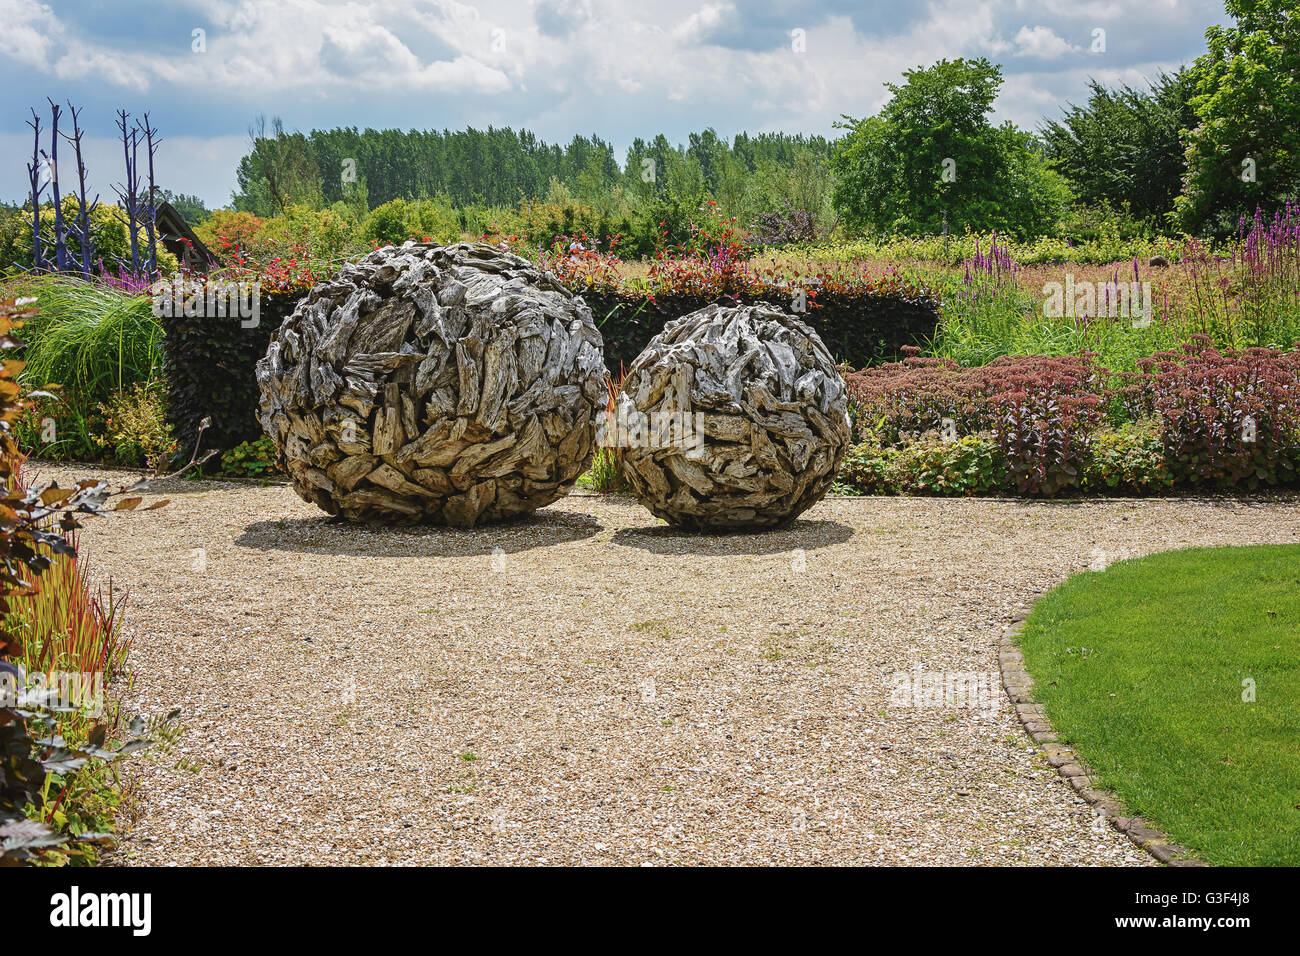 Los jardines de Appeltern es la inspiración garden park en los Países Bajos. El parque es de alrededor de 22 hectáreas y hay más tha Foto de stock